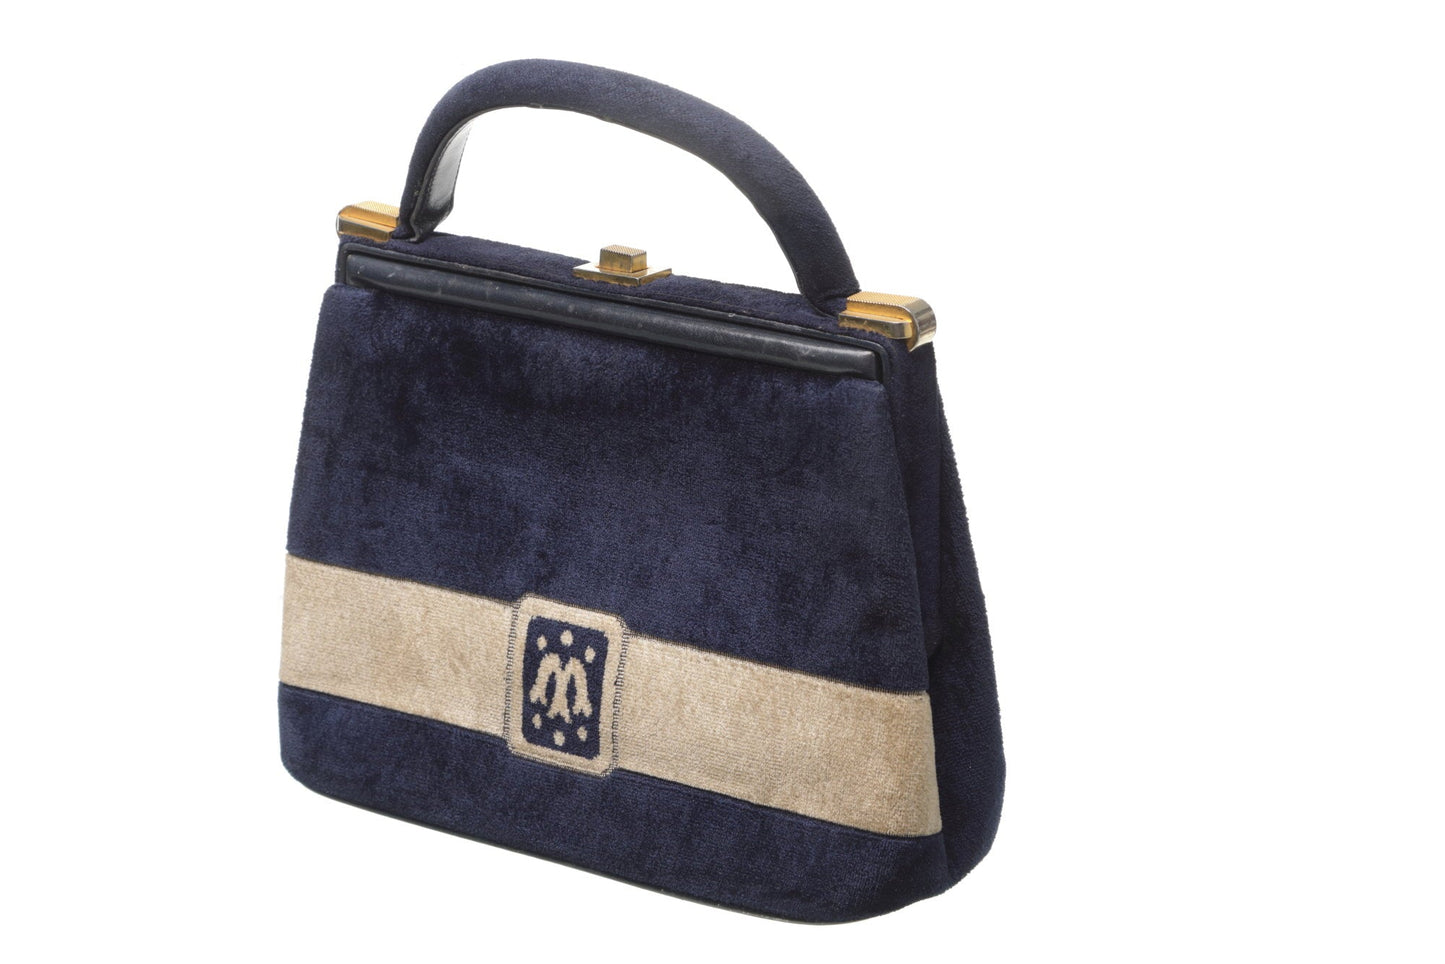 Two-tone velvet handbag